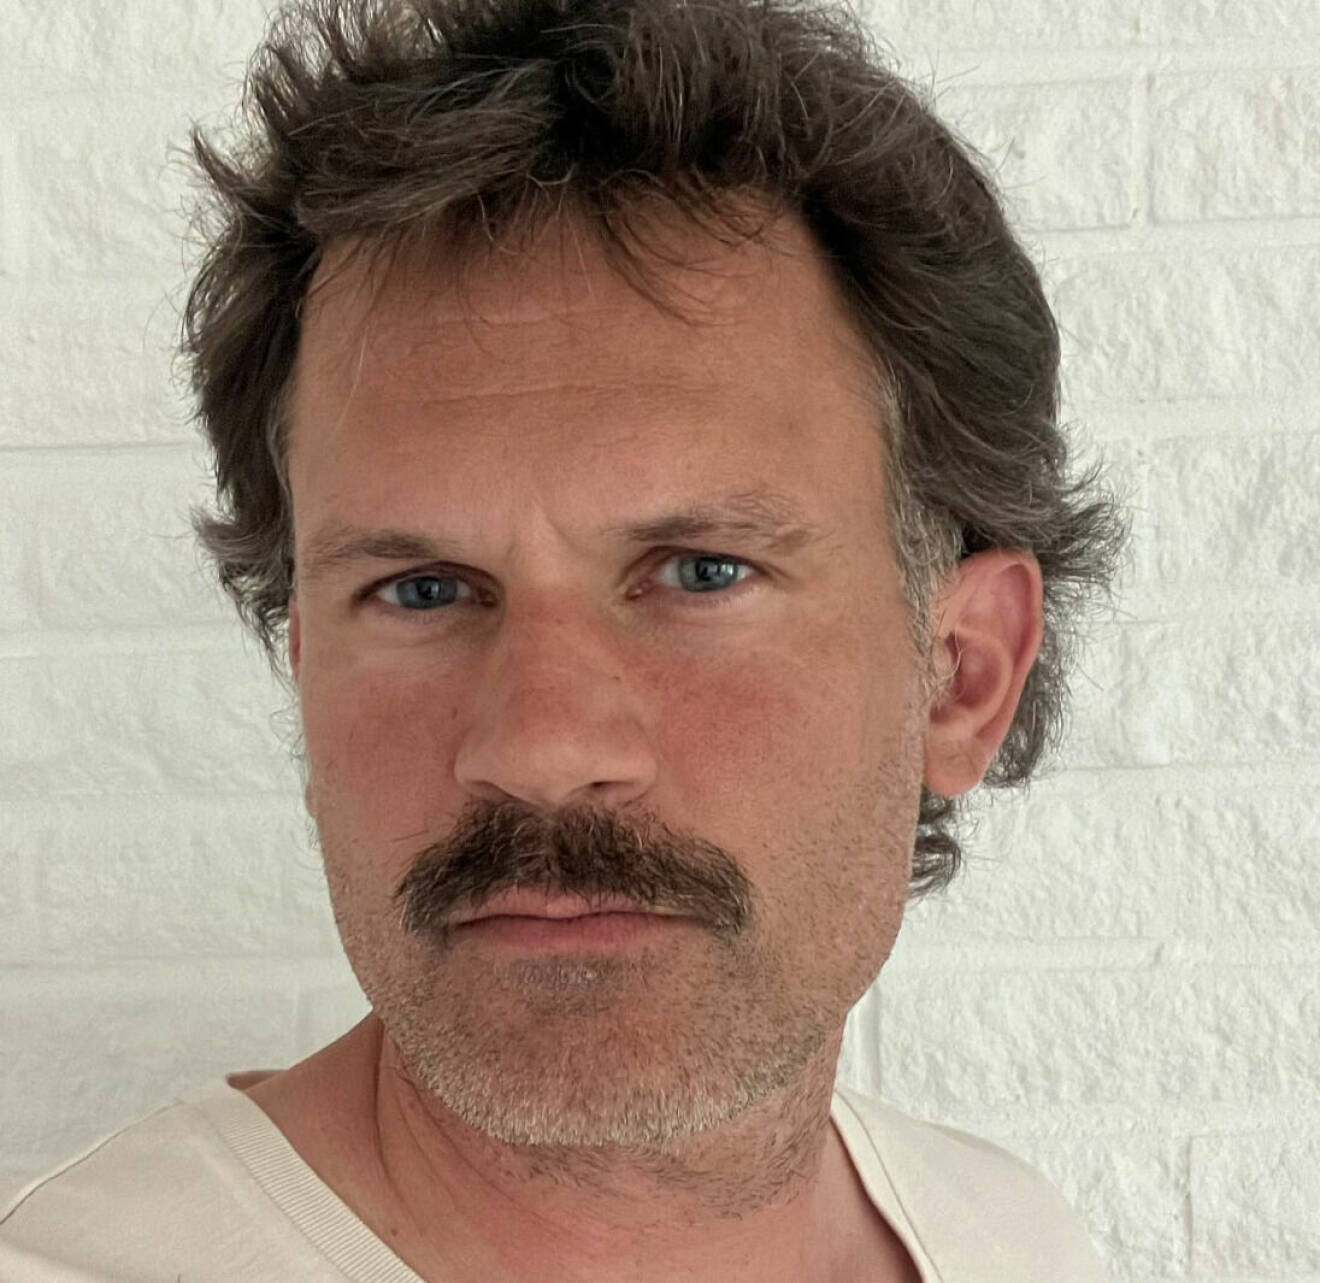 Stefan Holms nya look, med en läcker mustasch i centrum.